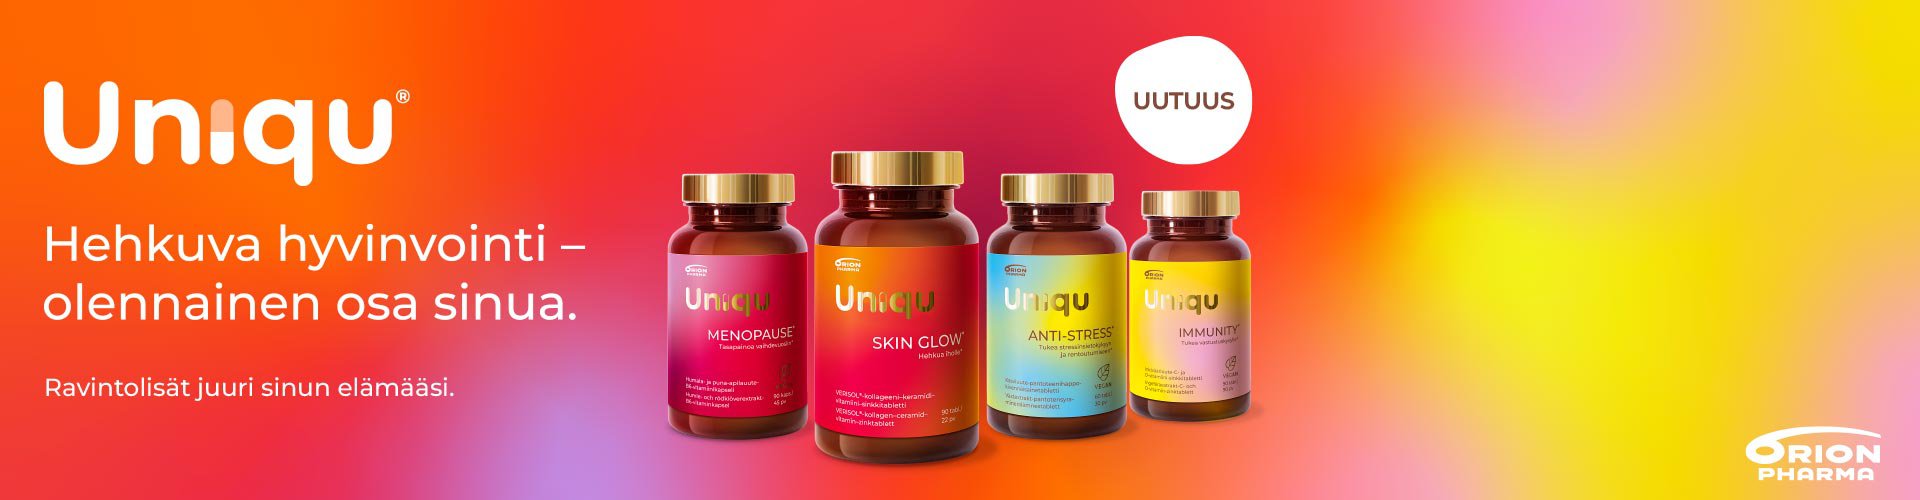 Uniqu ravintolisä apteekista stressiin, immuunipuolustukseen, ihon hyvinvointiin, menopaussiin. Apteekista ravintolisät menopaussiin.